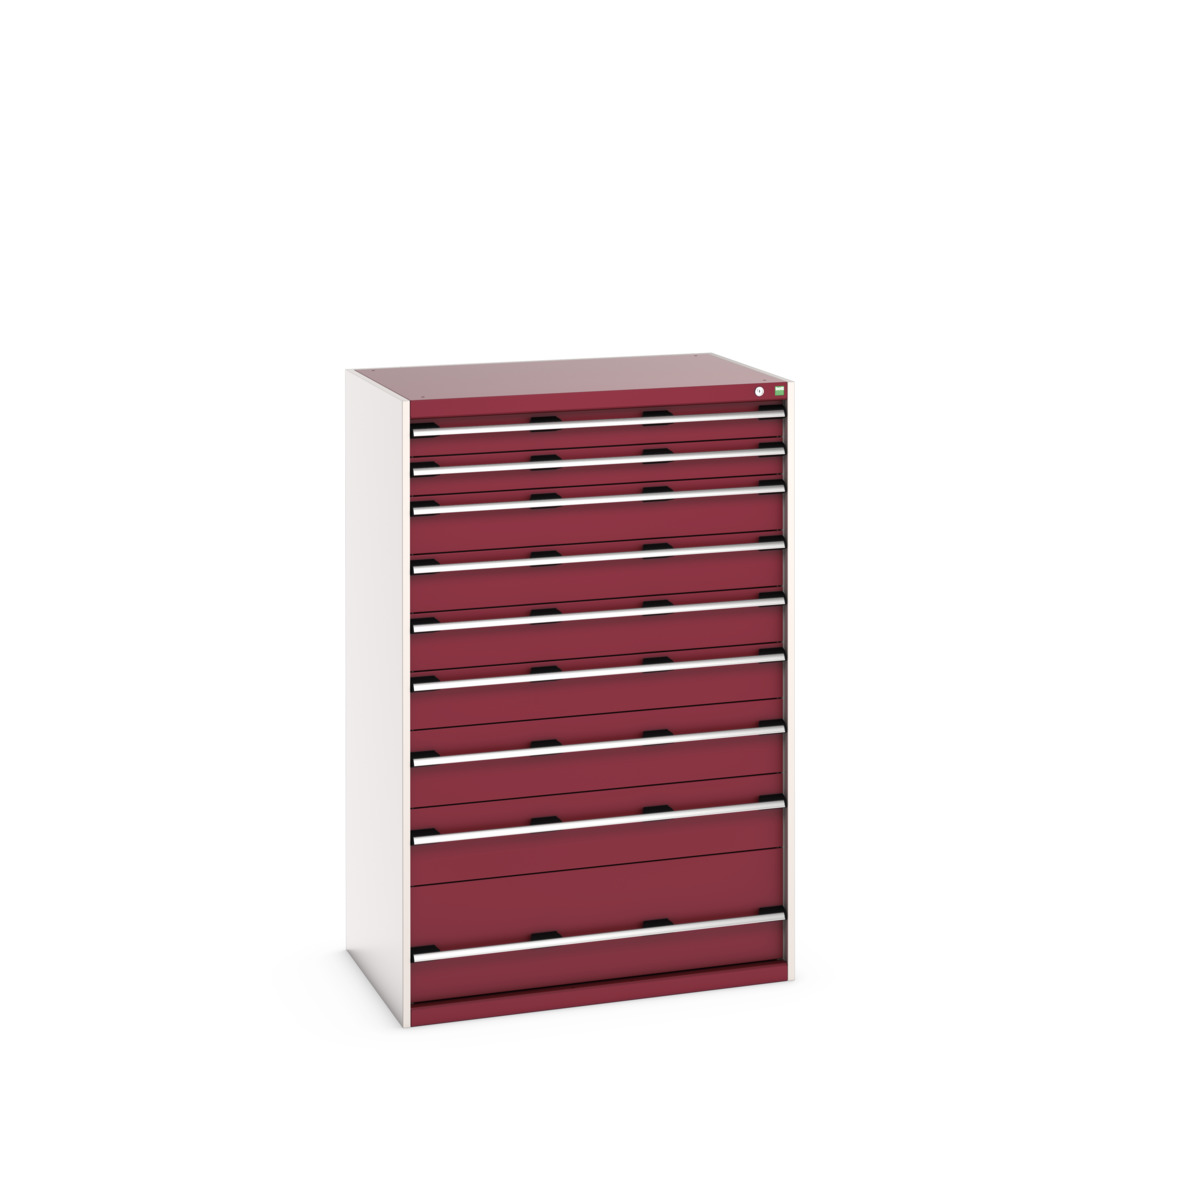 40029036.24V - cubio drawer cabinet